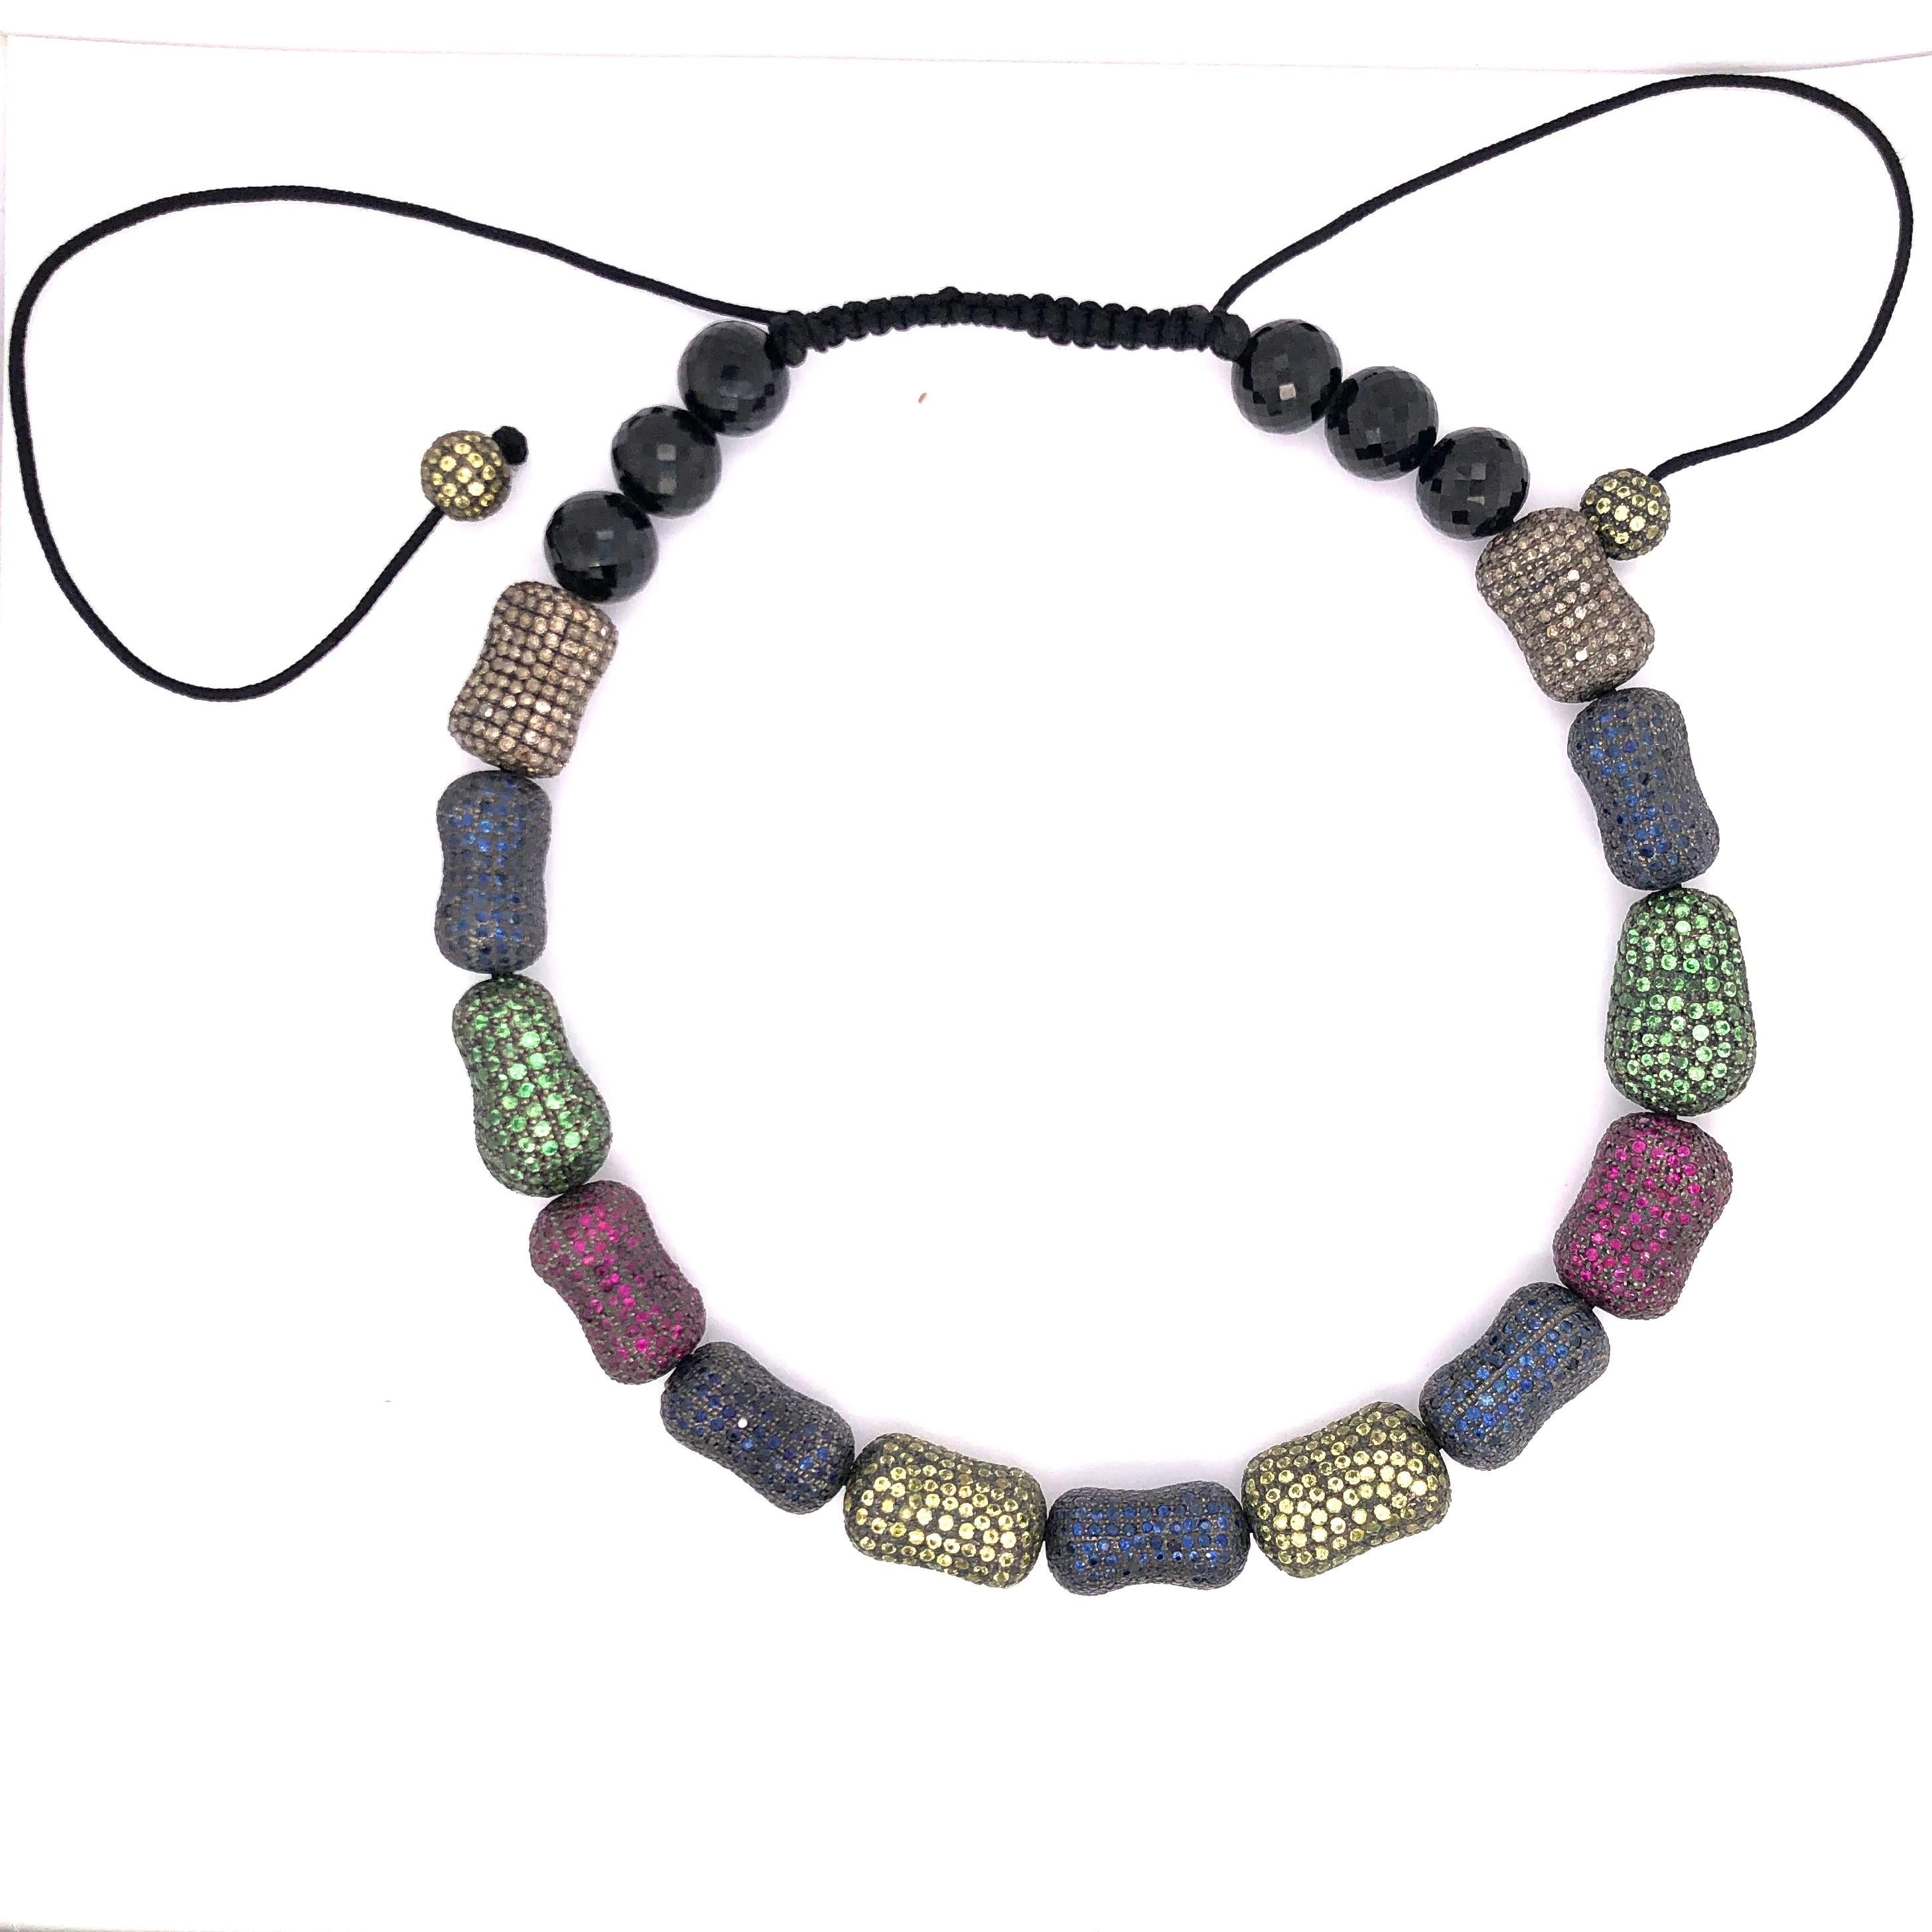 Sehr stilvoll diese Multi Color Stones wie Saphir, Tsavorit, Rubin  Makramee-Kropfband ist lustig und sehr trendy. Dieser Choker hat mehrere Saphir-Pave-Perlen mit Onyx-Steinen auf der Rückseite und 2 runden Perlen hängen. Dieses Kropfband ist mit